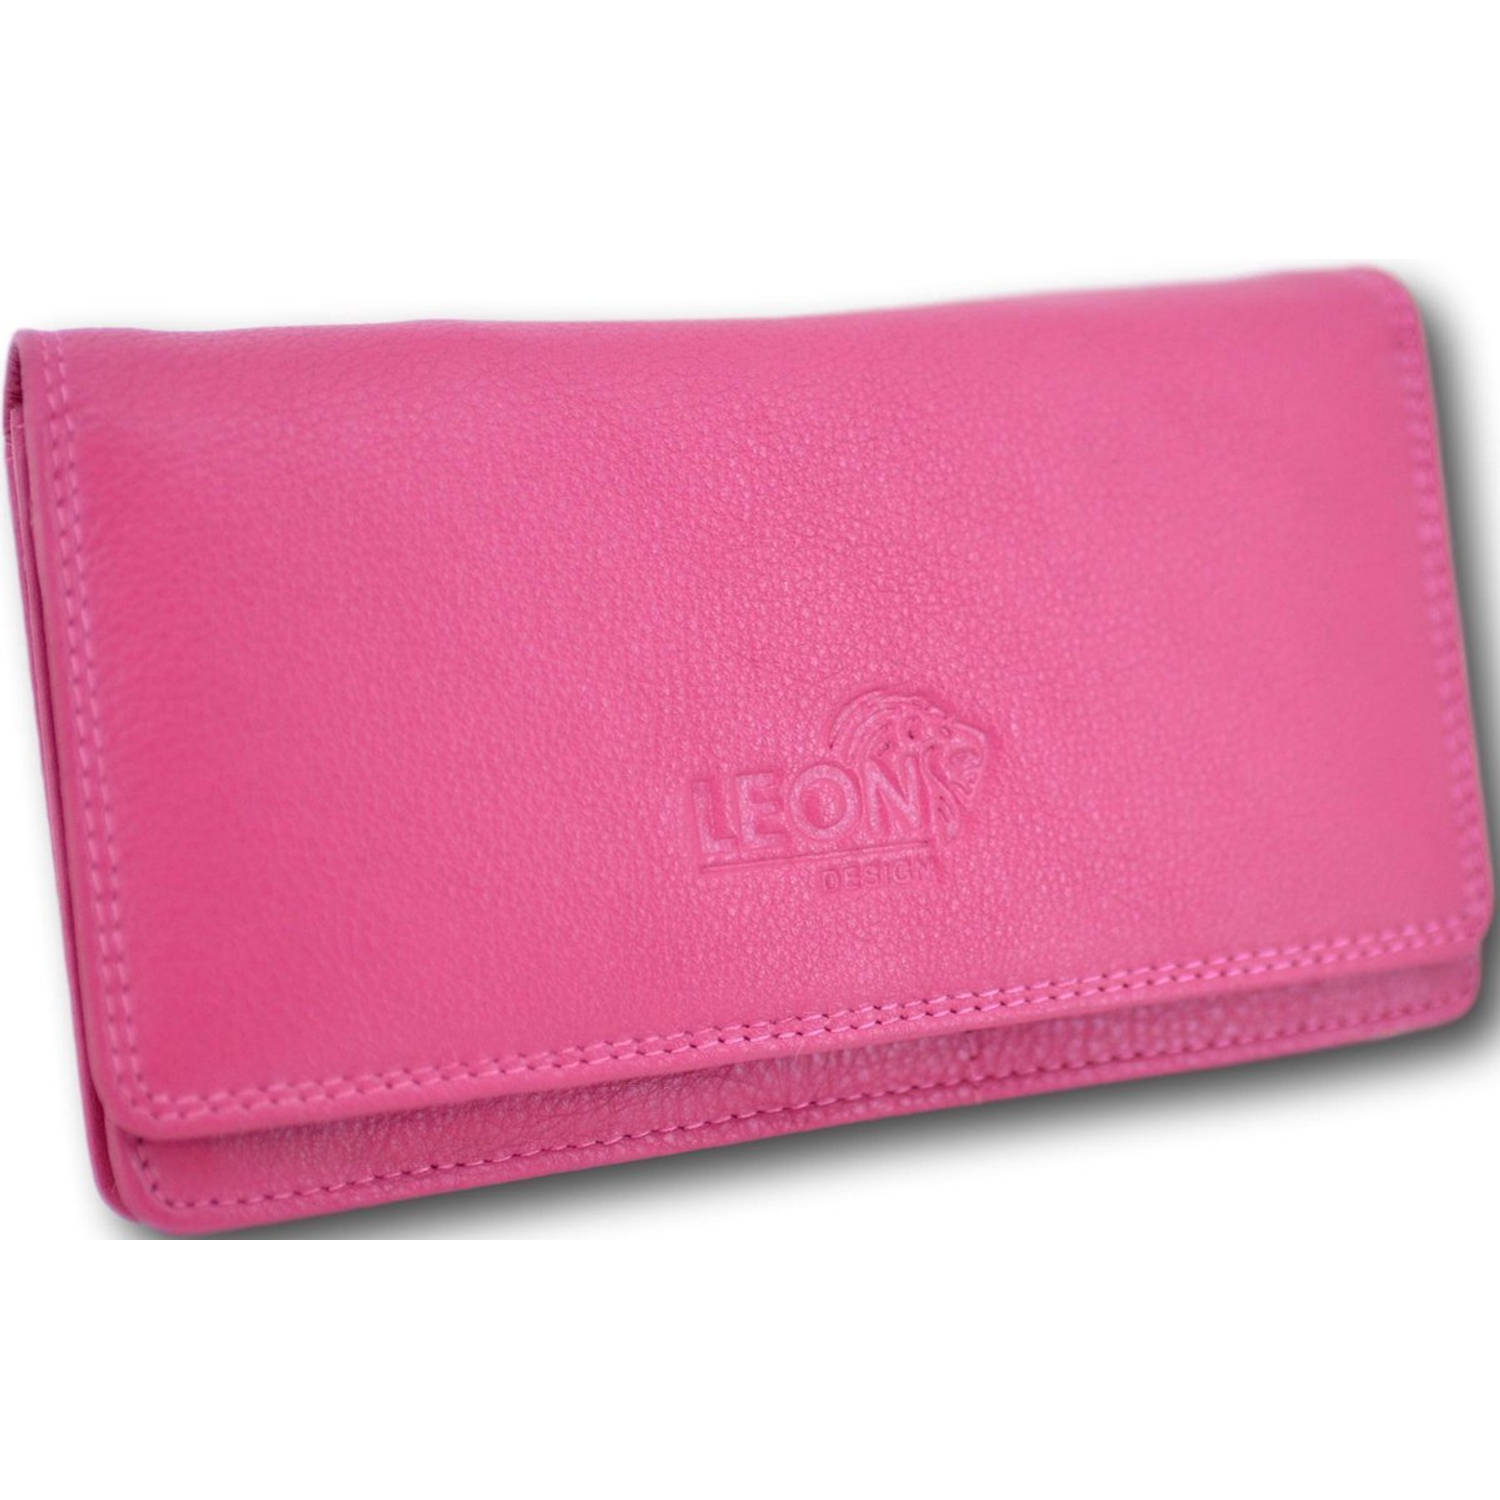 LeonDesign 16-W784 -29 portemonnee roze leer